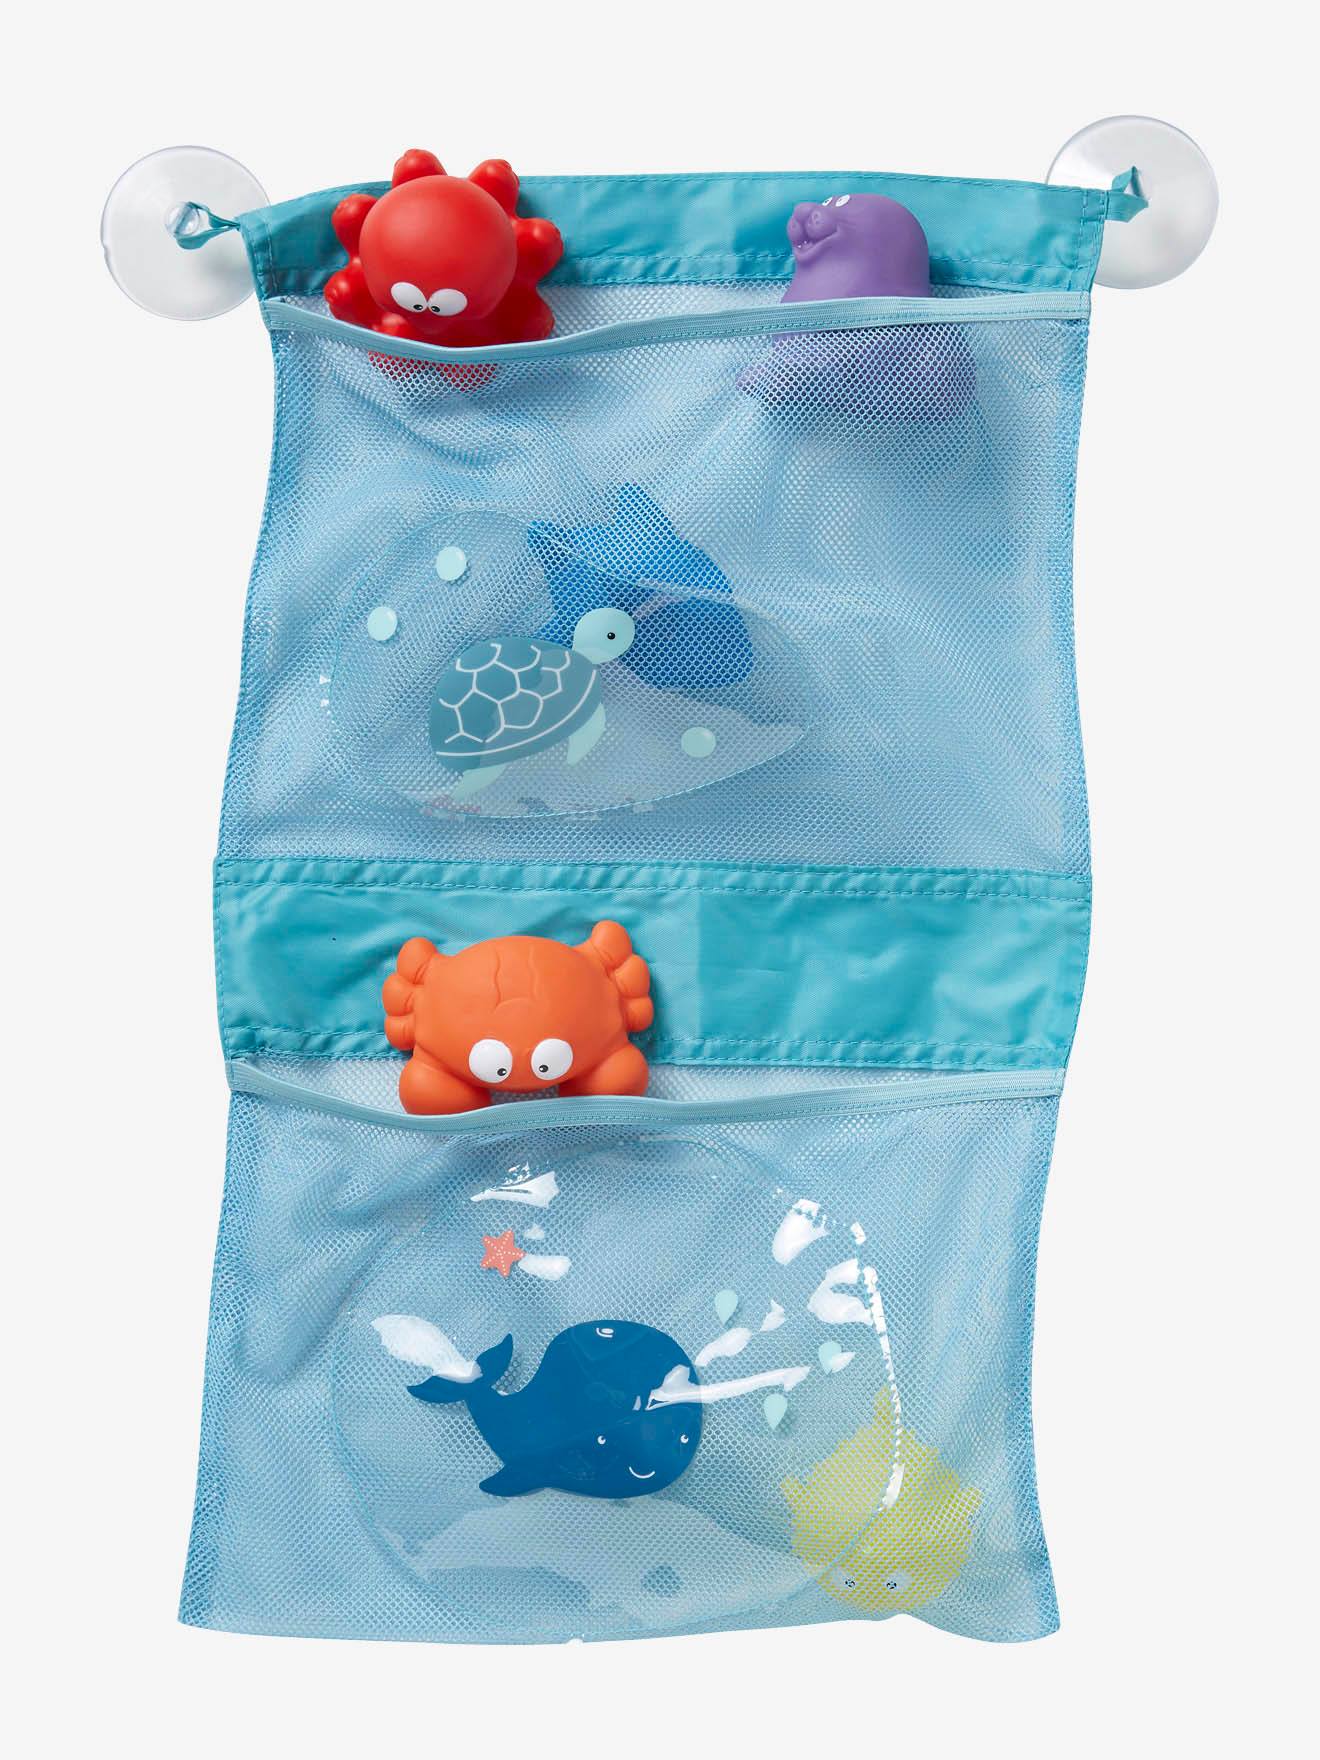 niños sin BPA bricolaje BBLIKE juguetes de agua juguetes de baño para niños para salir de 18 meses Juguetes de baño para bebés niños tuberías de montaje manuales 